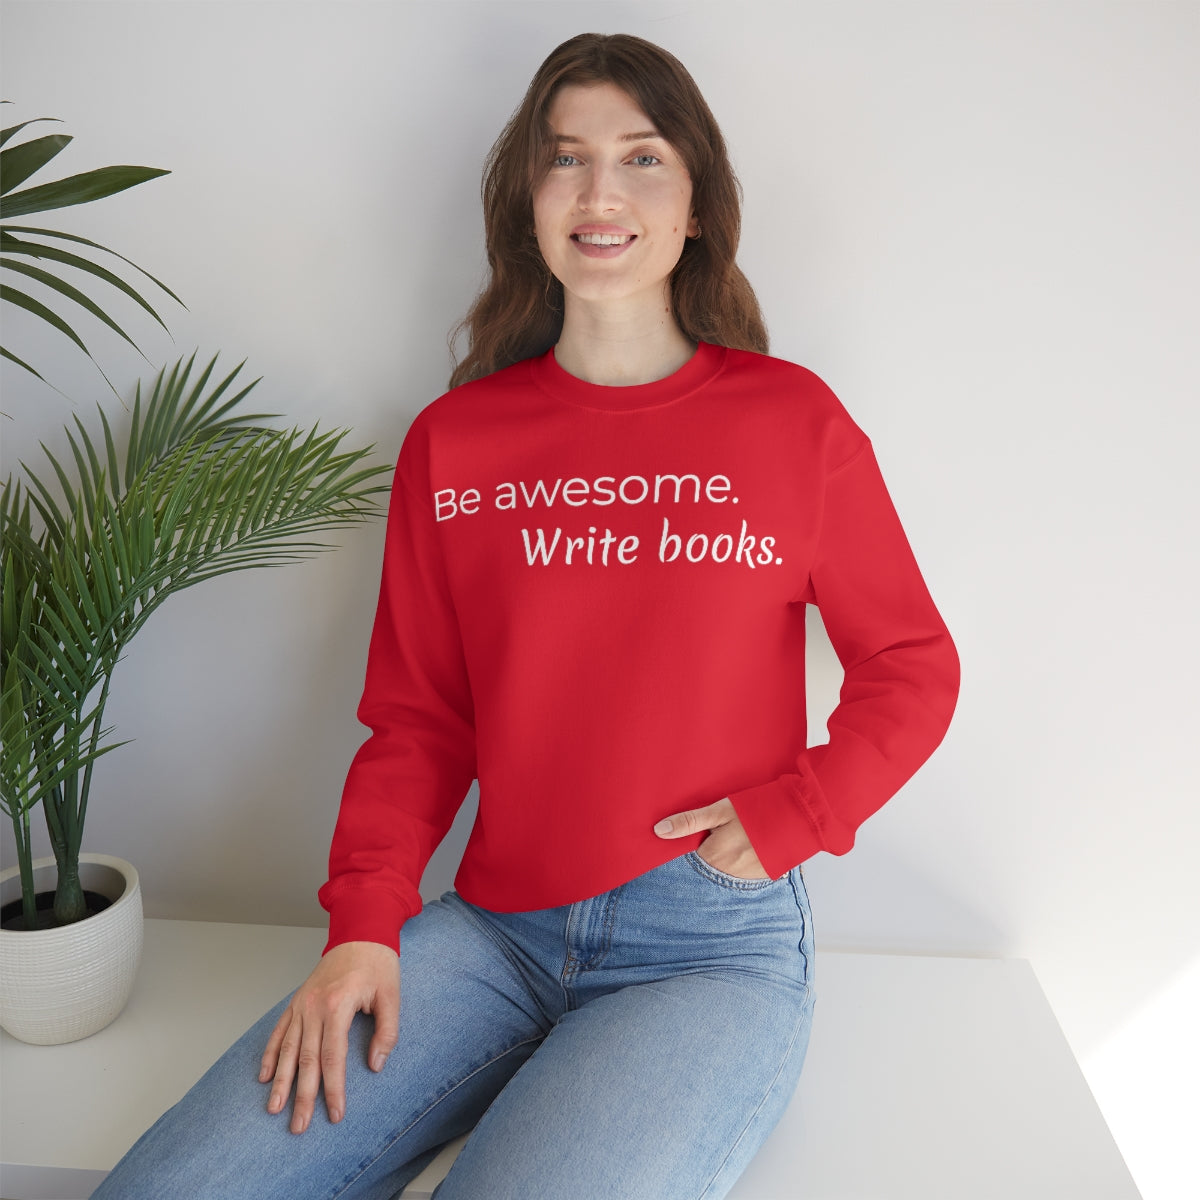 Be awesome write books // Writing Themed Unisex Crewneck Sweatshirt